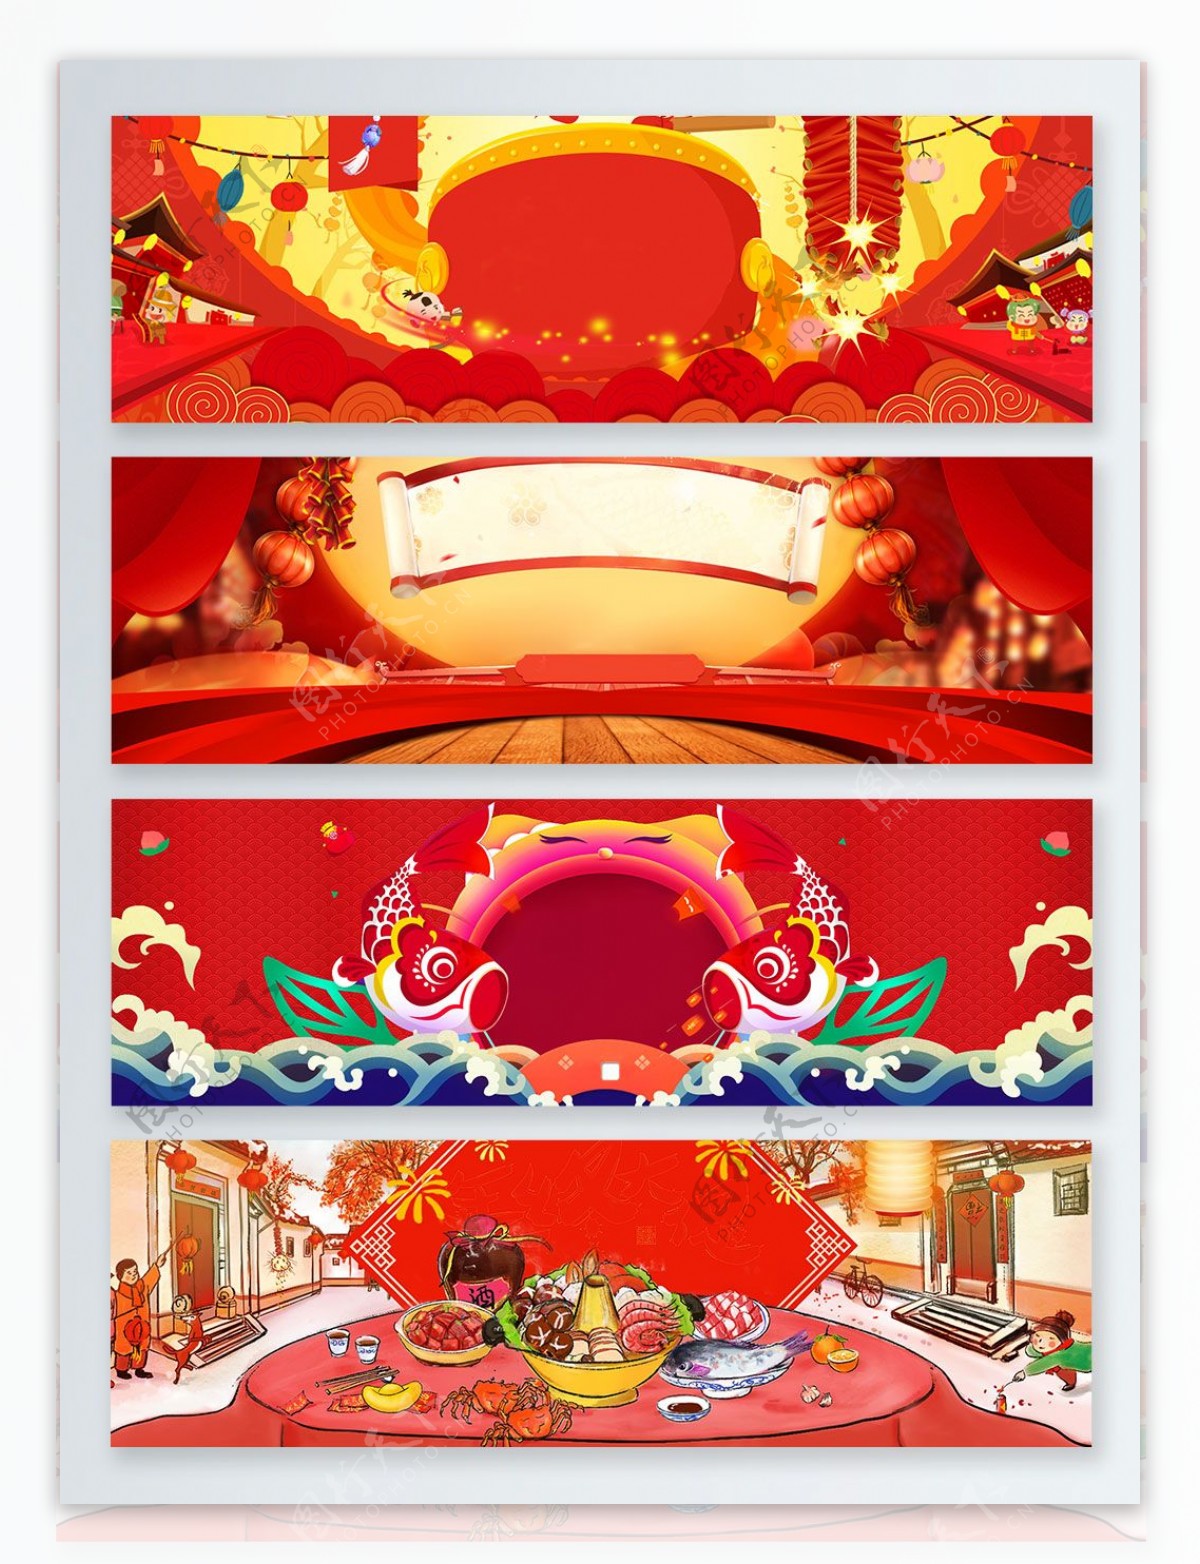 新年红色banner背景图